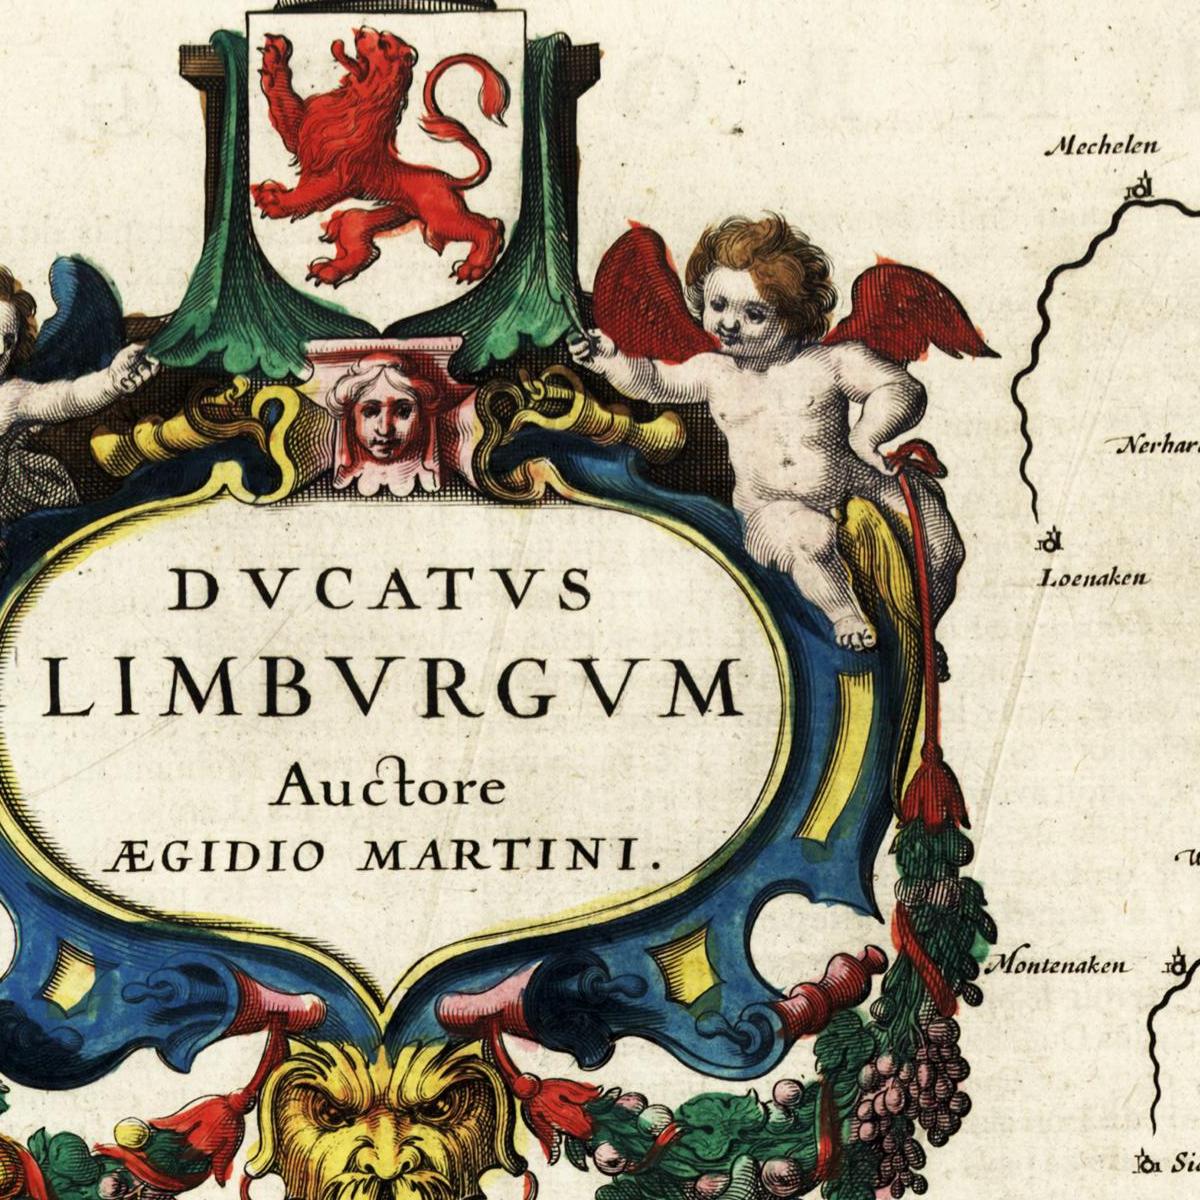 Historische Landkarte Limburg um 1647